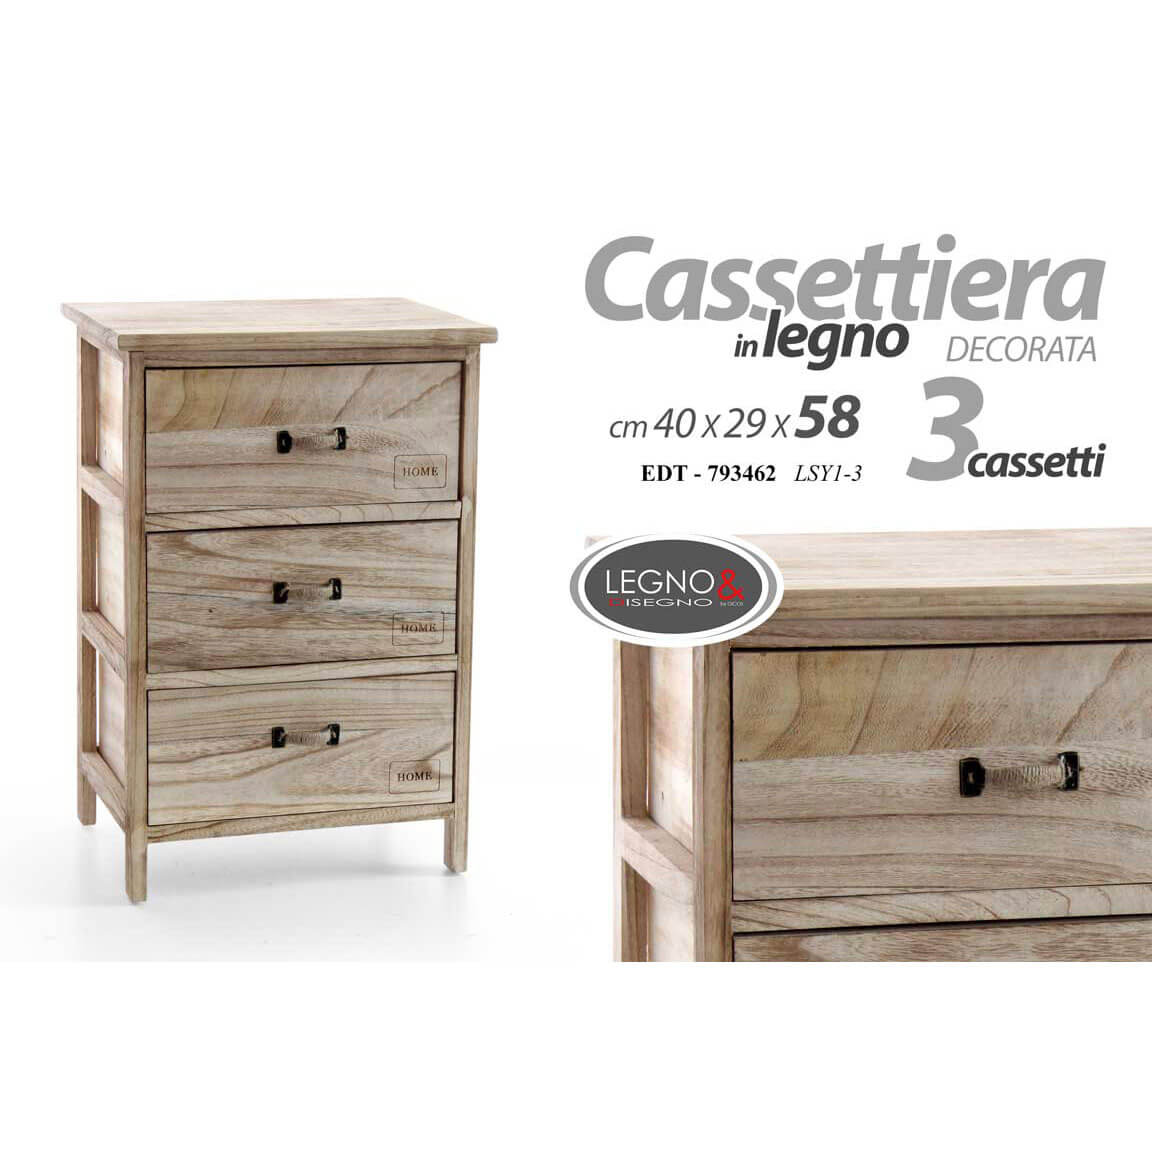 CASSETTIERA 3CASS.CM.40X29X58 LEGNO